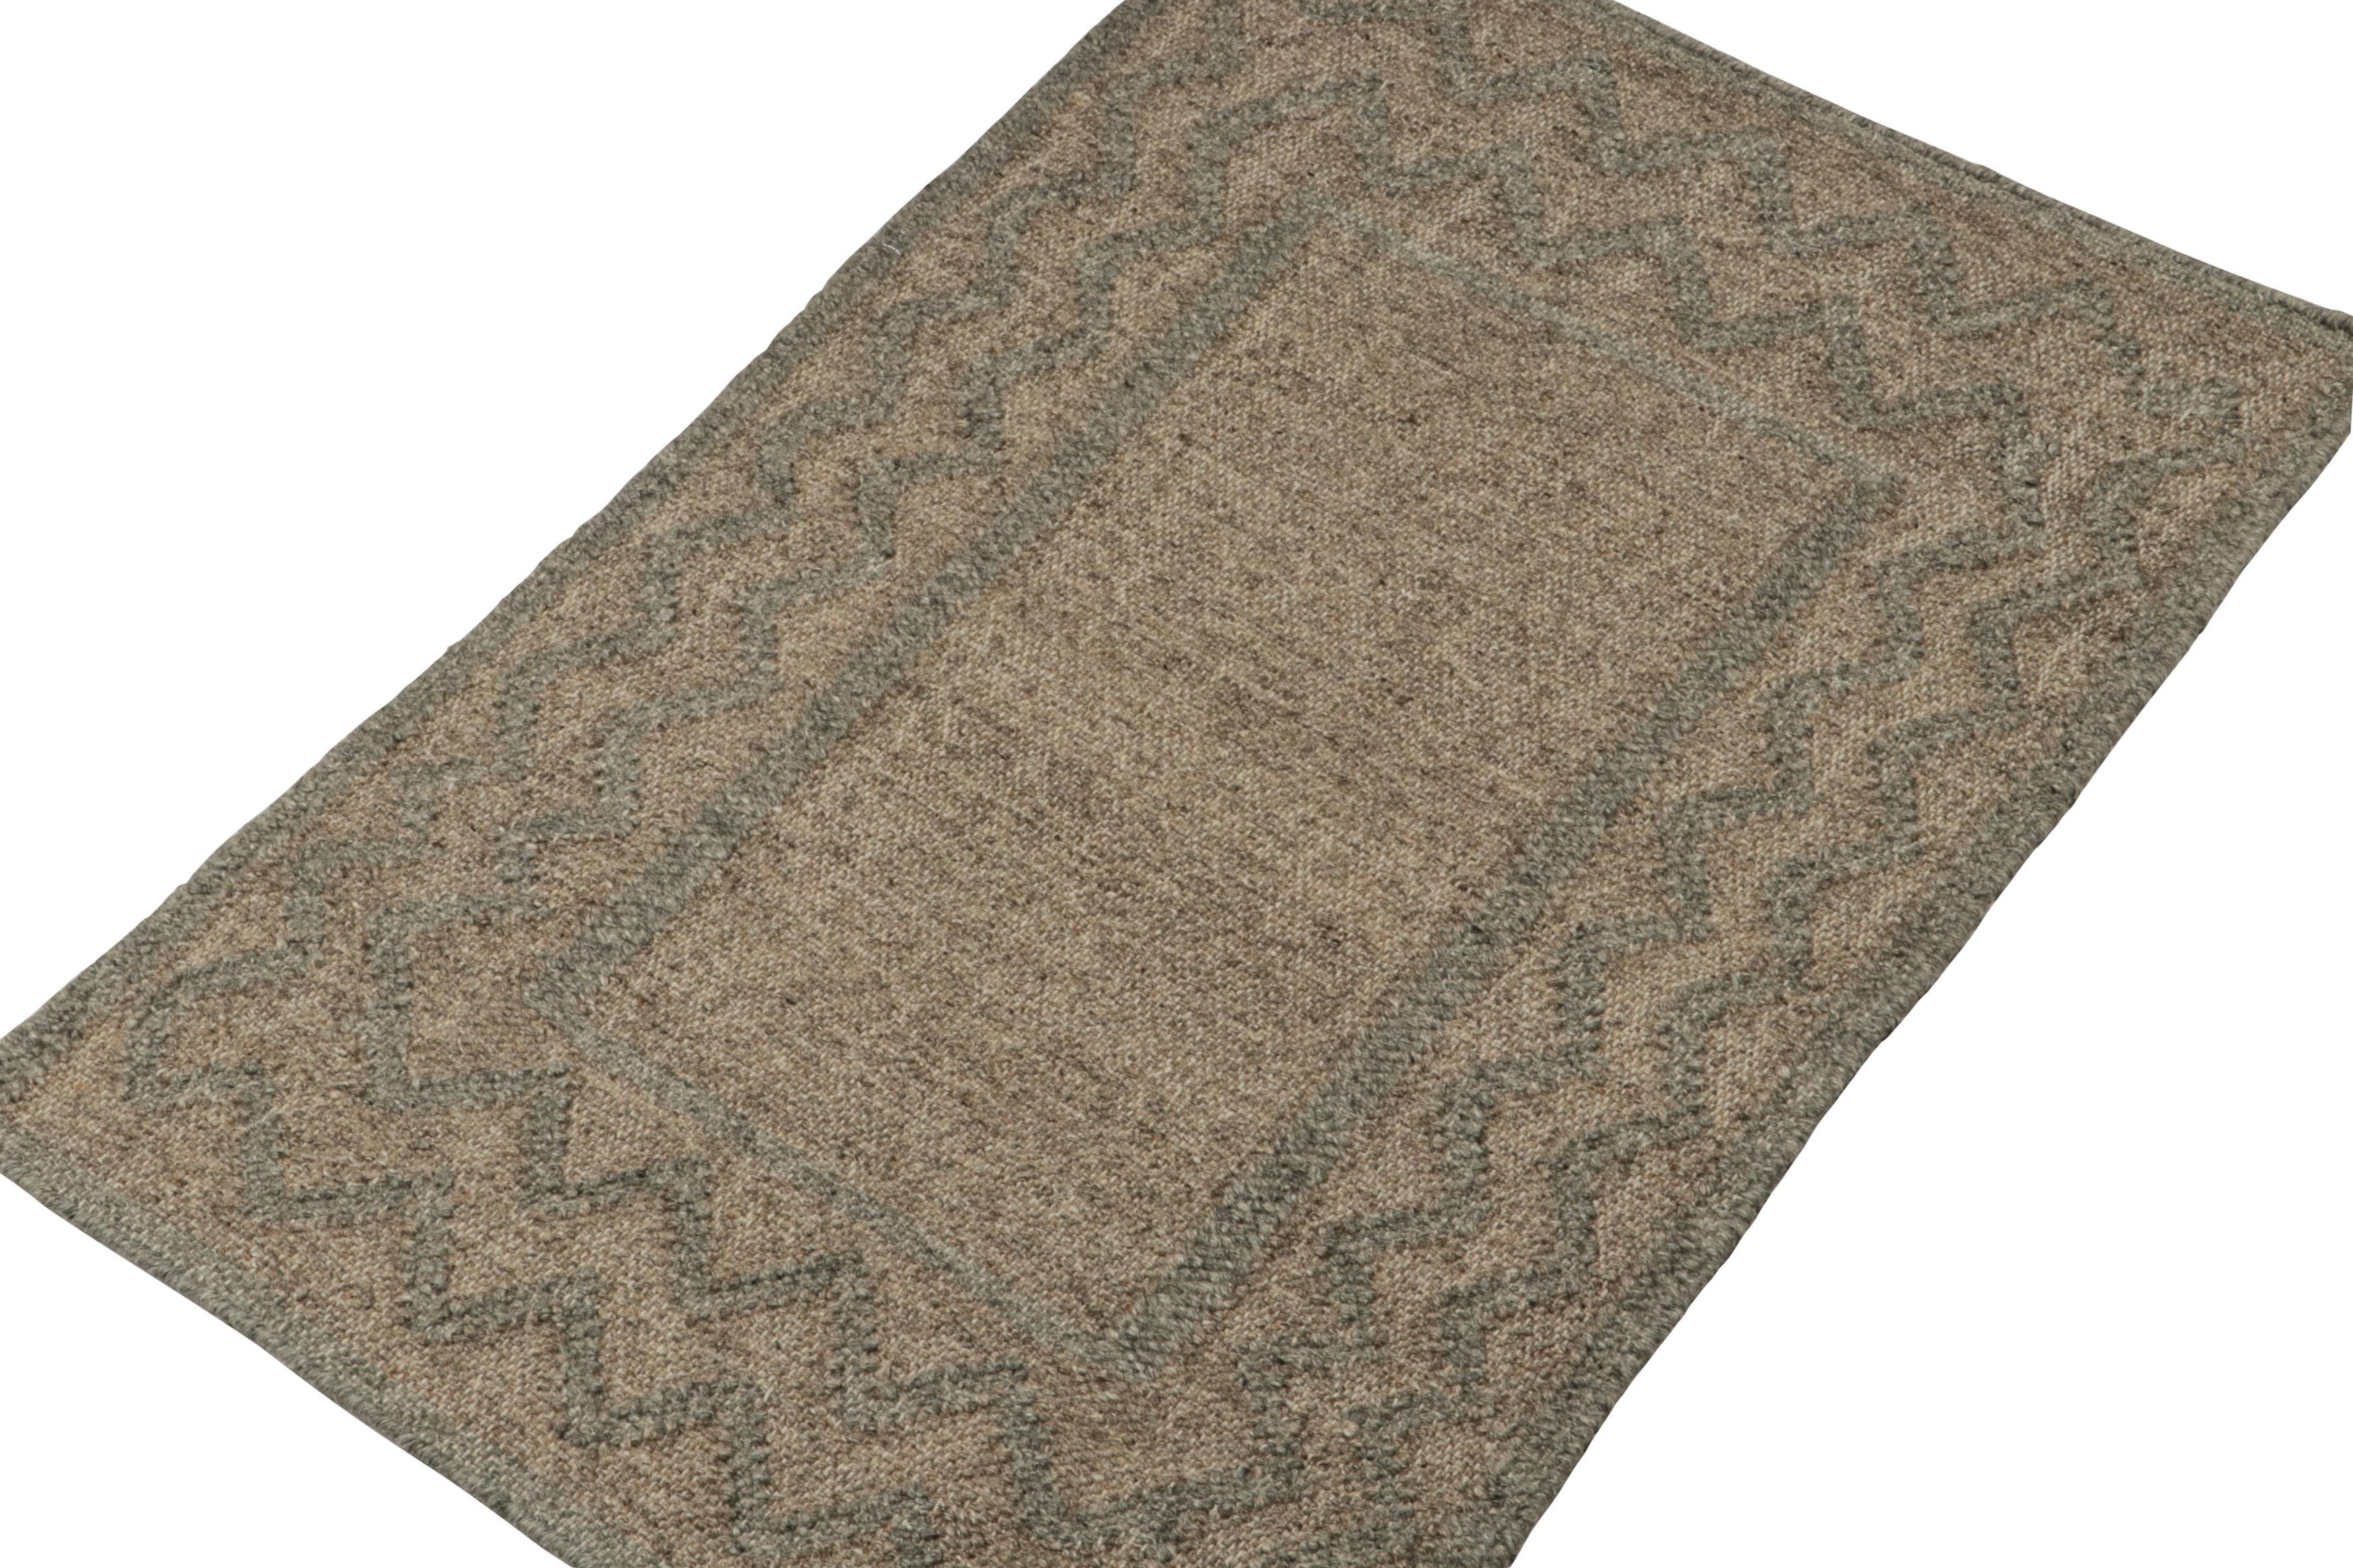 Dieser 2x3-Teppich ist eine kühne Neuheit in der Flachgewebekollektion von Rug & Kilim.  

Über das Design: 

Dieser moderne Kelim aus handgewebter Wolle und Baumwolle trägt geometrische Muster in Braun und Grau. Darüber hinaus genießt er eine